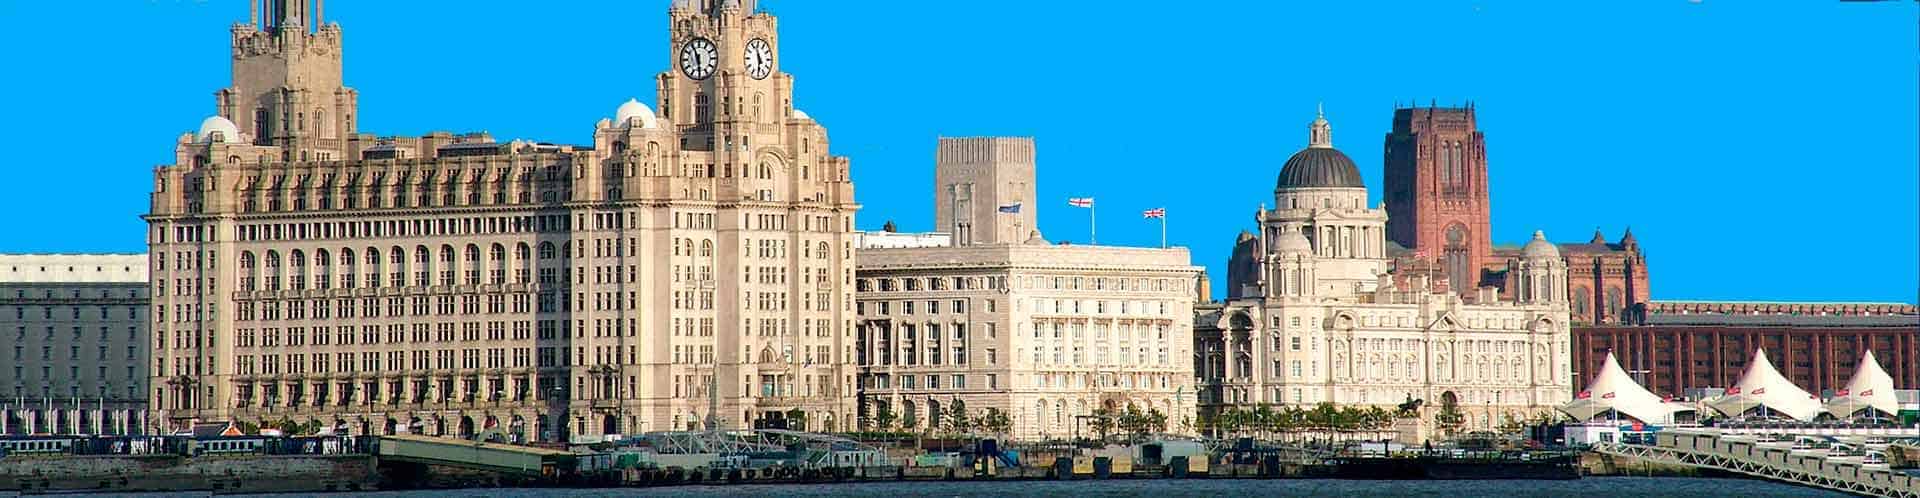 Free Tour Liverpool - Turismo Reino Unido